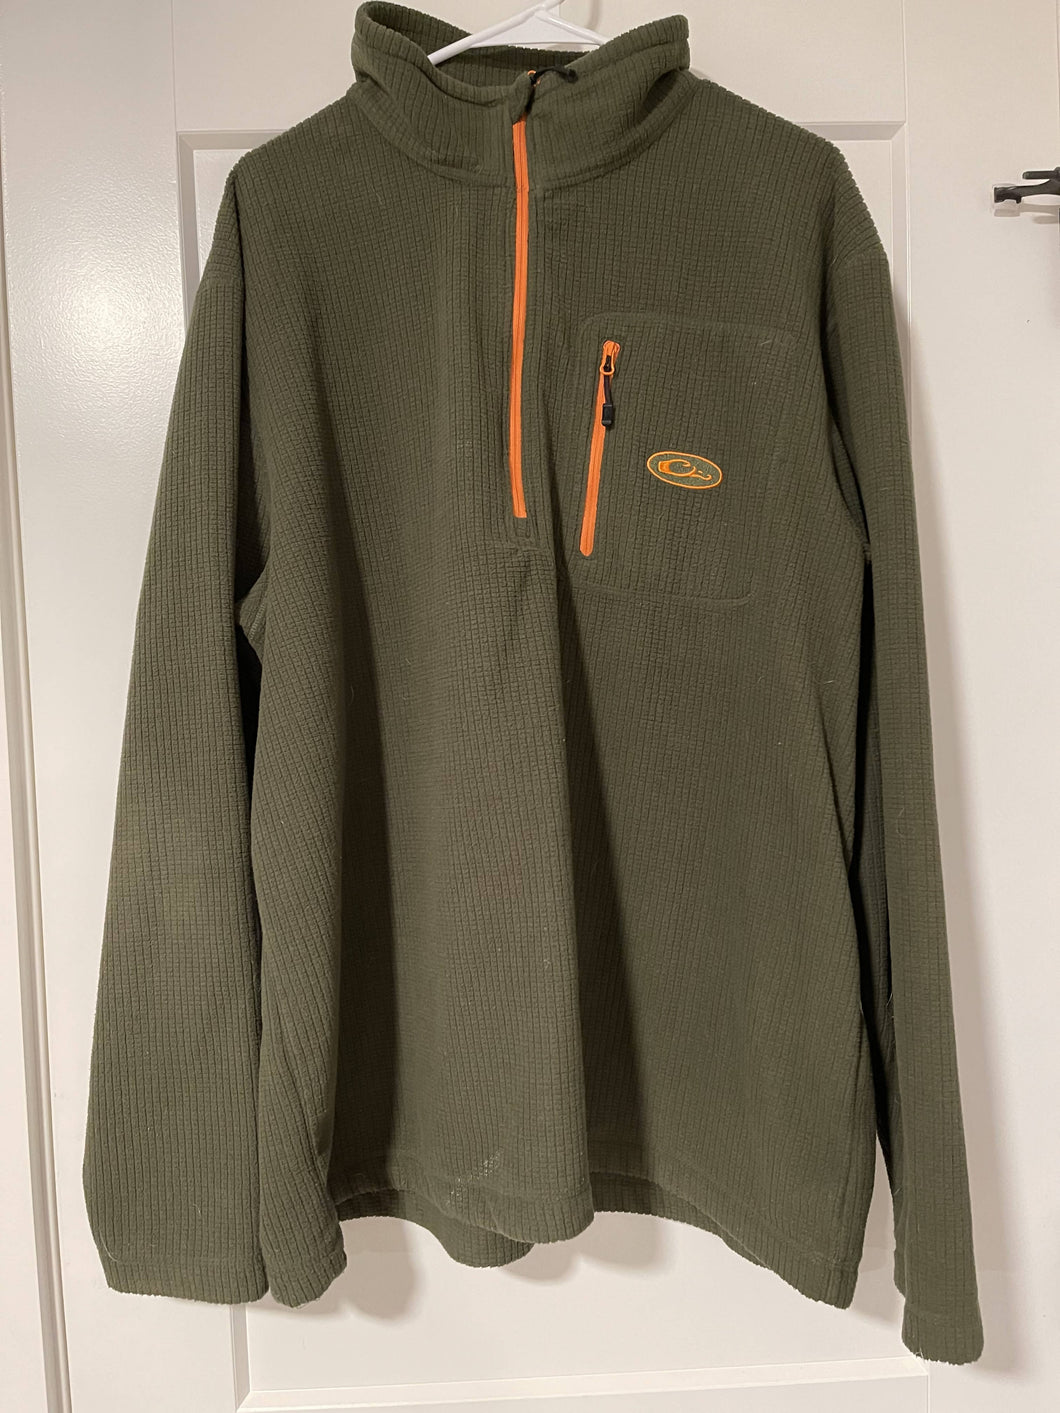 Quarter Zip (Green/Orange) Fleece Jacket